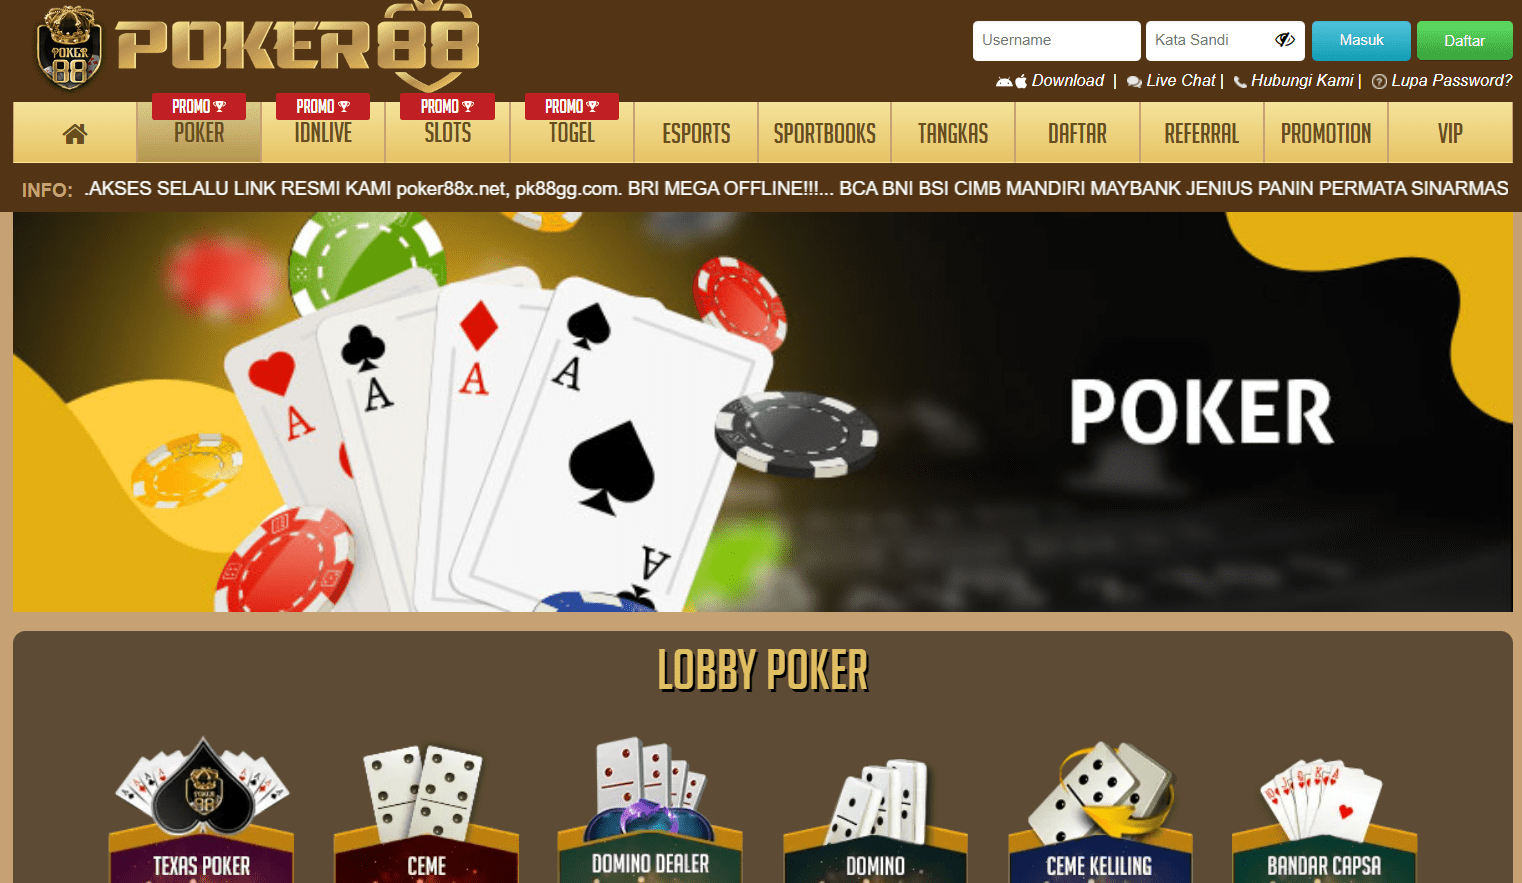 Poker88 Casino